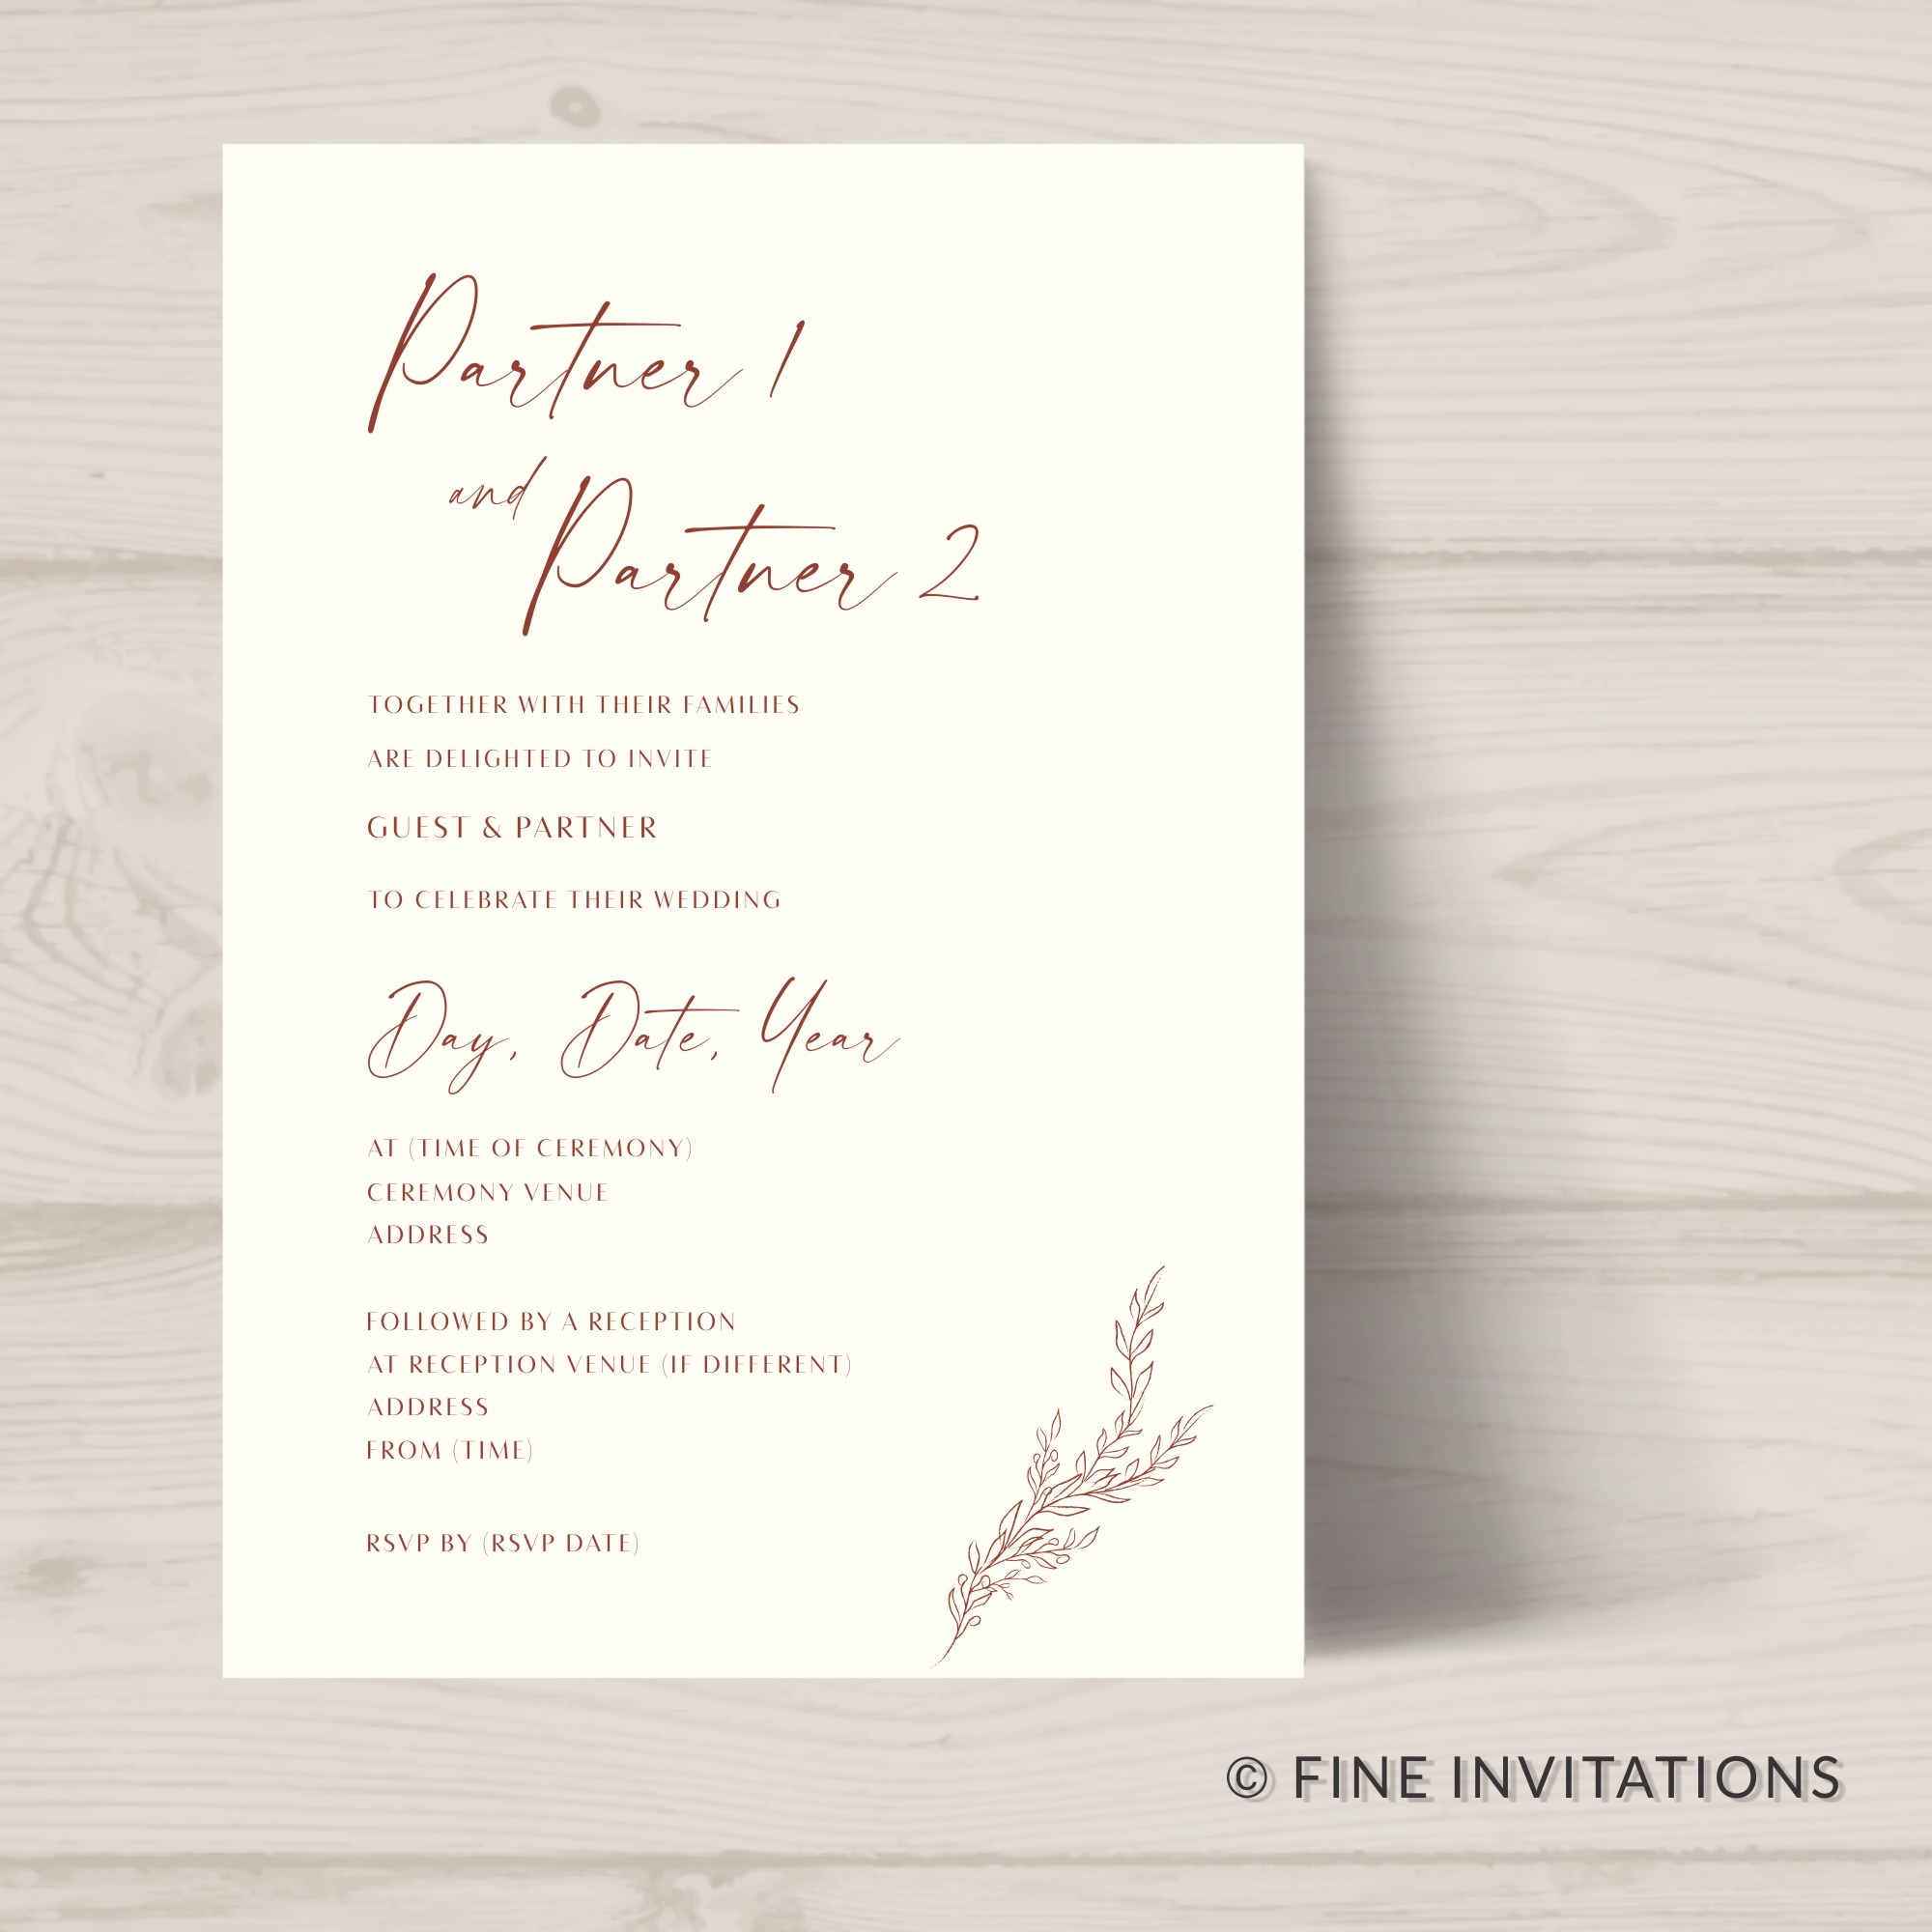 Minimalist wedding invitation, simple line art